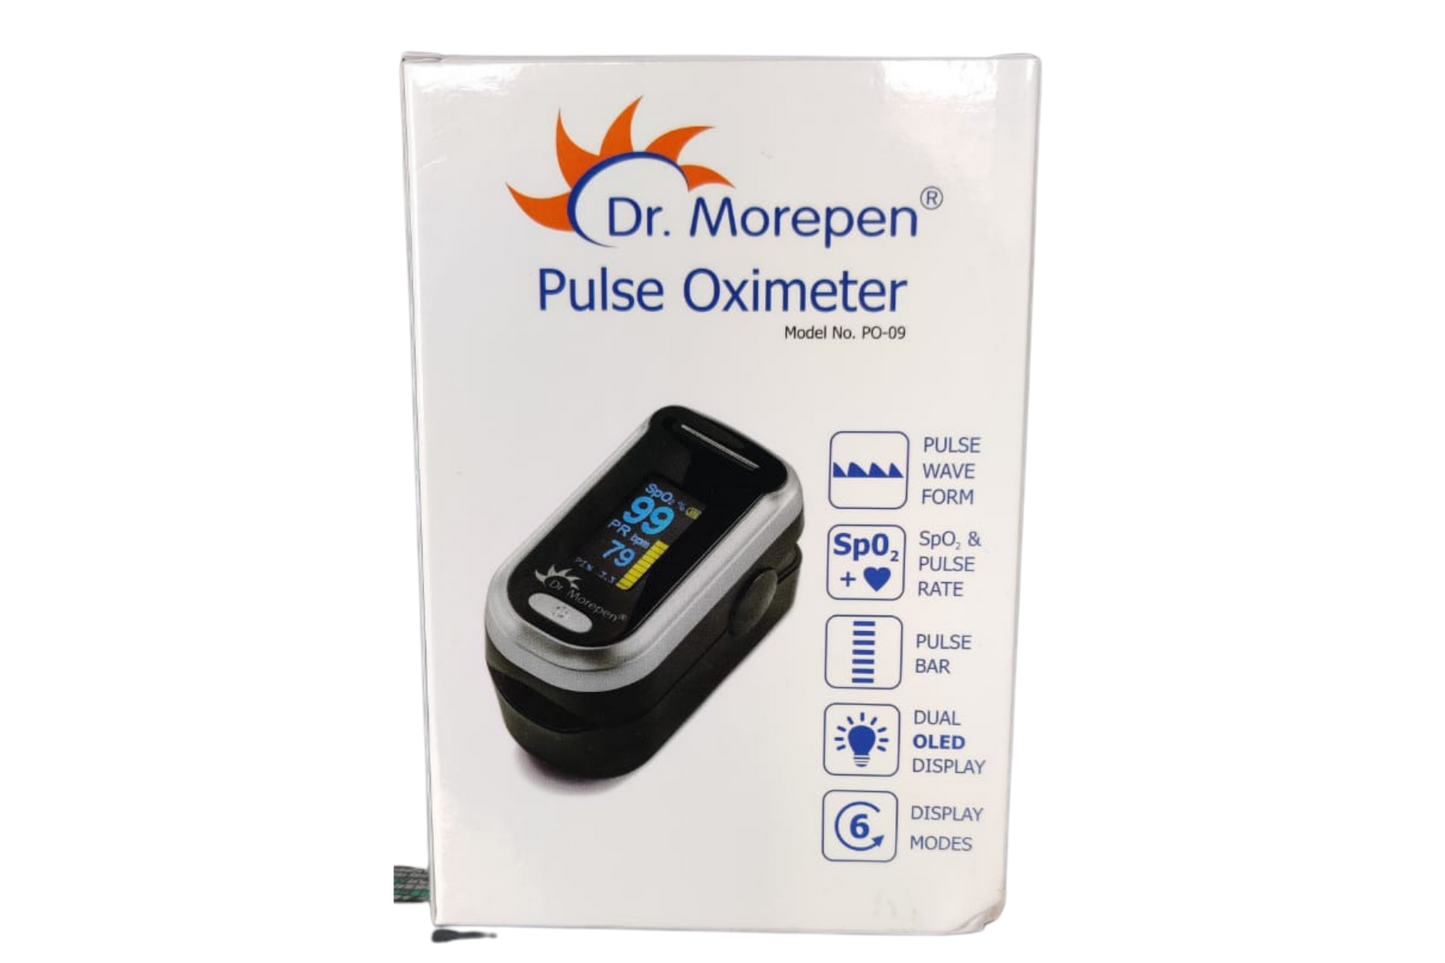 Dr. Morepen Pulse Oximeter - 1 N